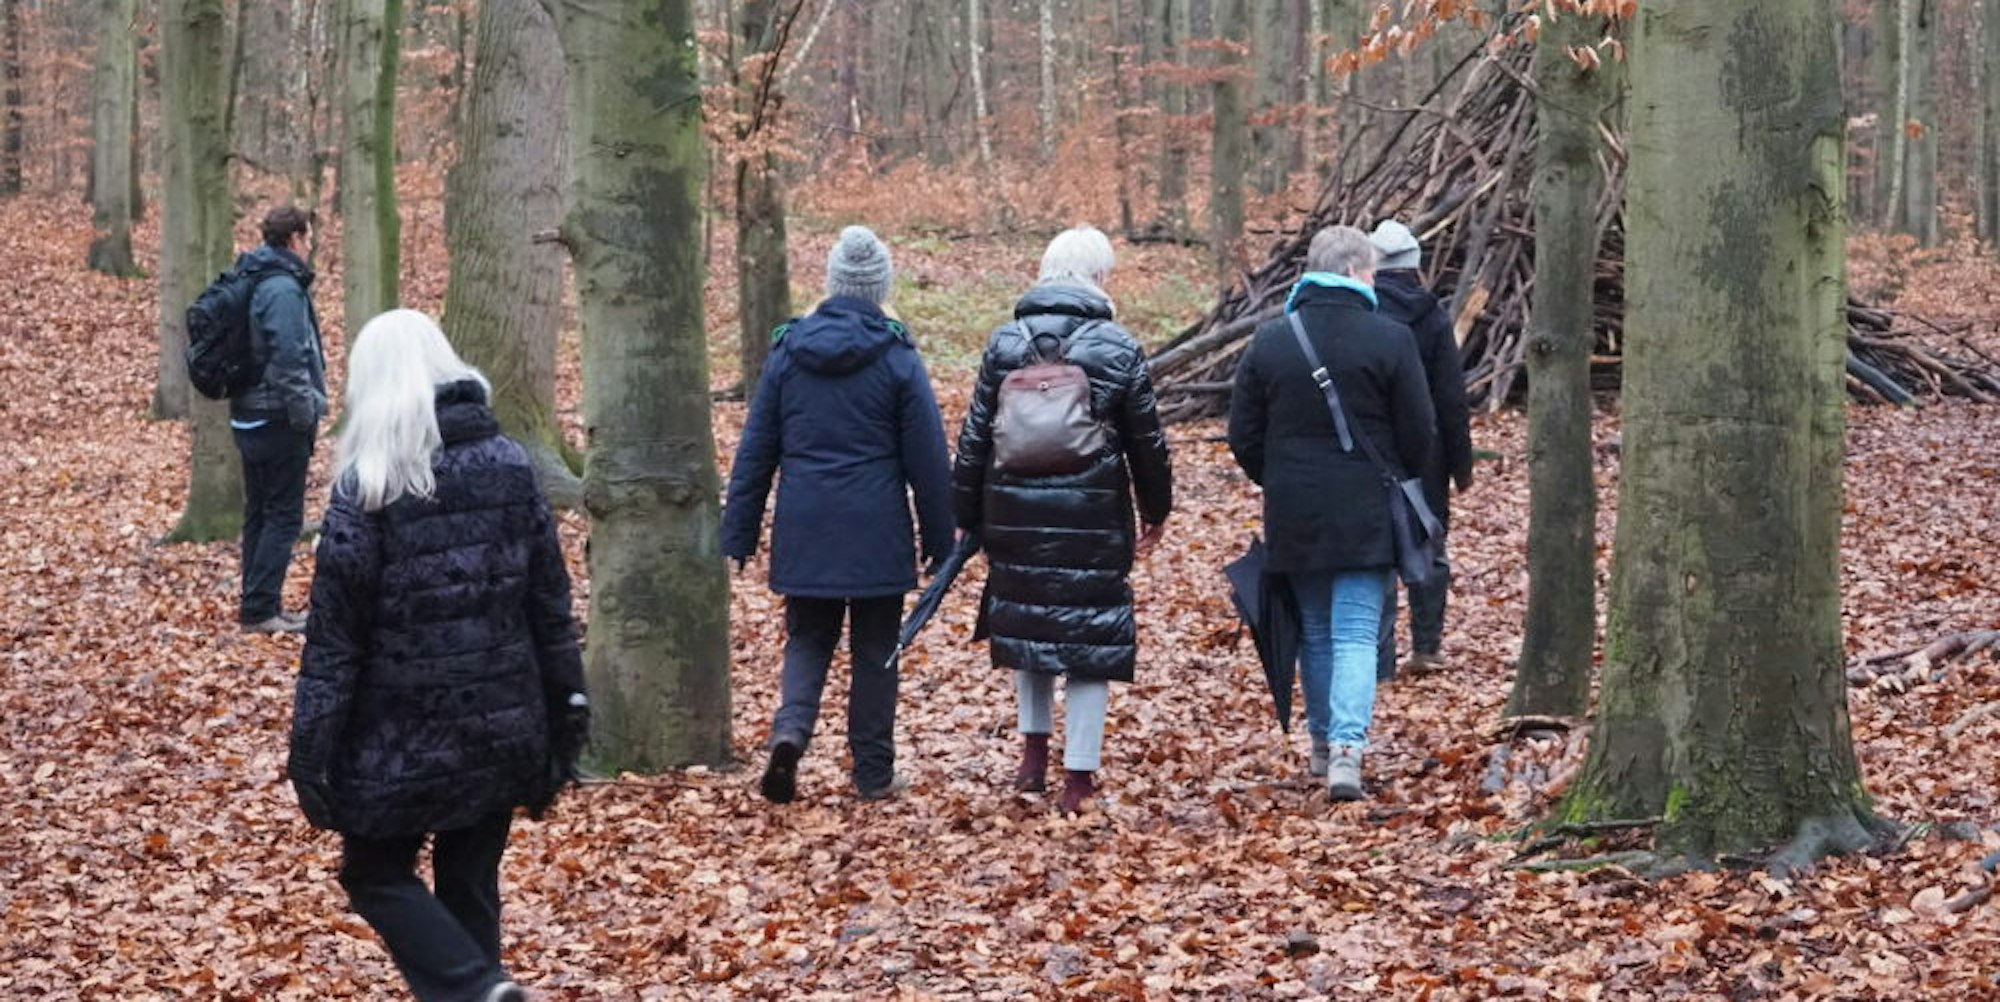 Auf der Suche nach dem richtigen Baum zum Anlehnen sind die Teilnehmerinnen im Villewald unterwegs.